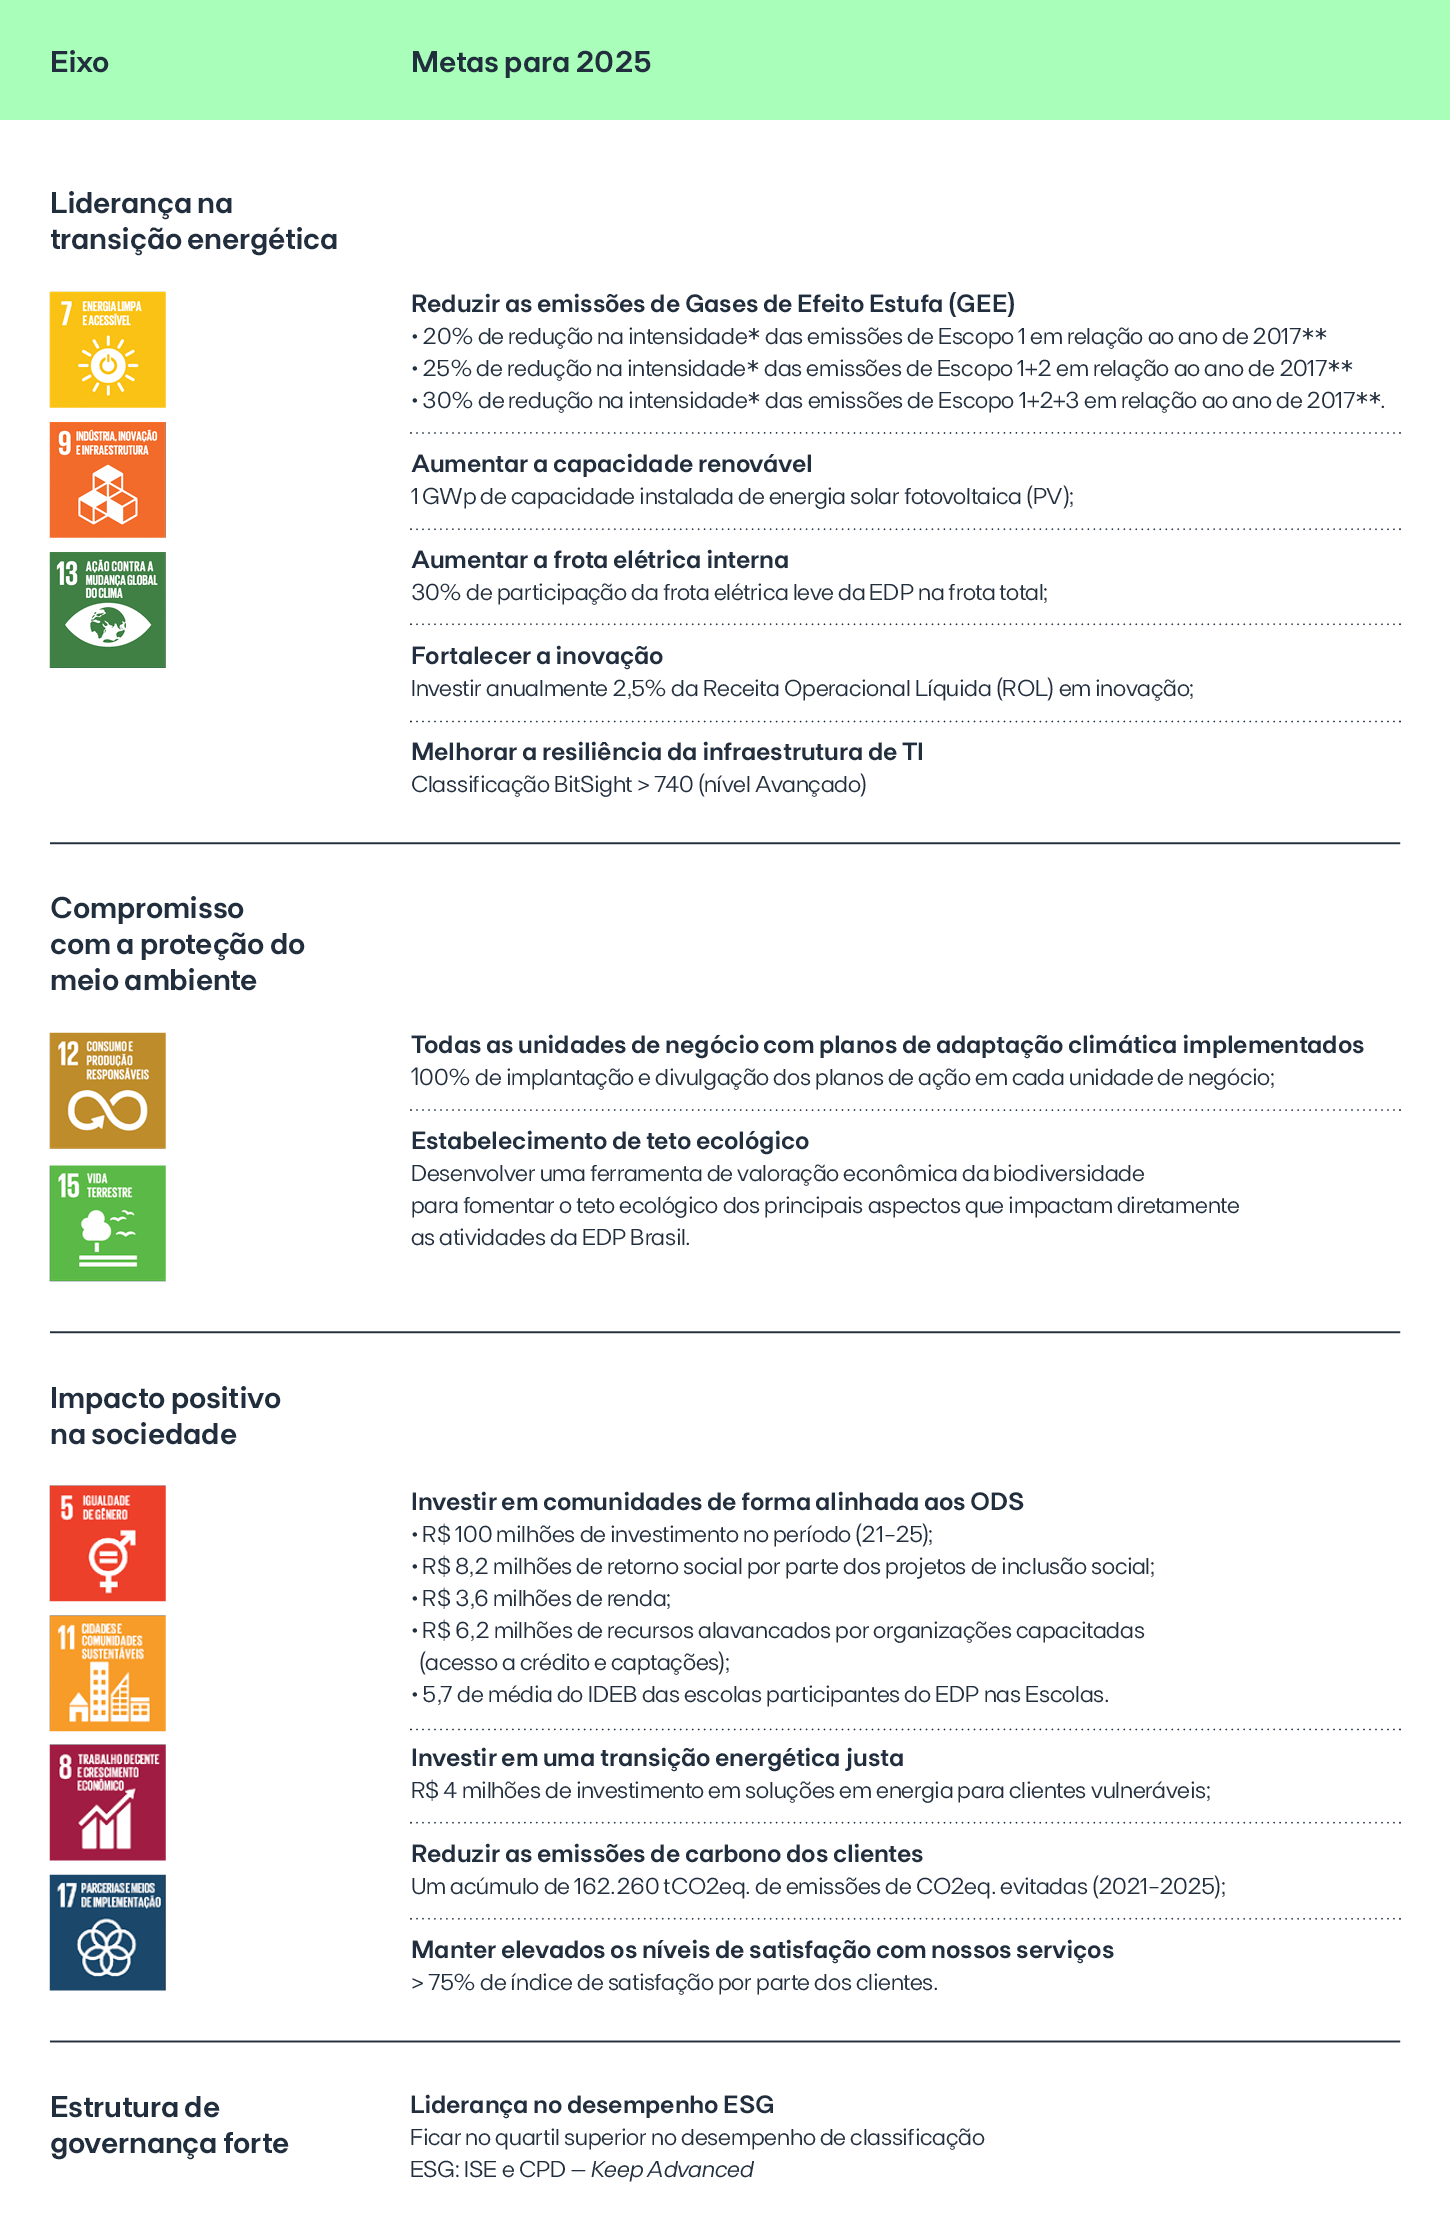 tabela com as metas de sustentabilidade da EDP para 2025